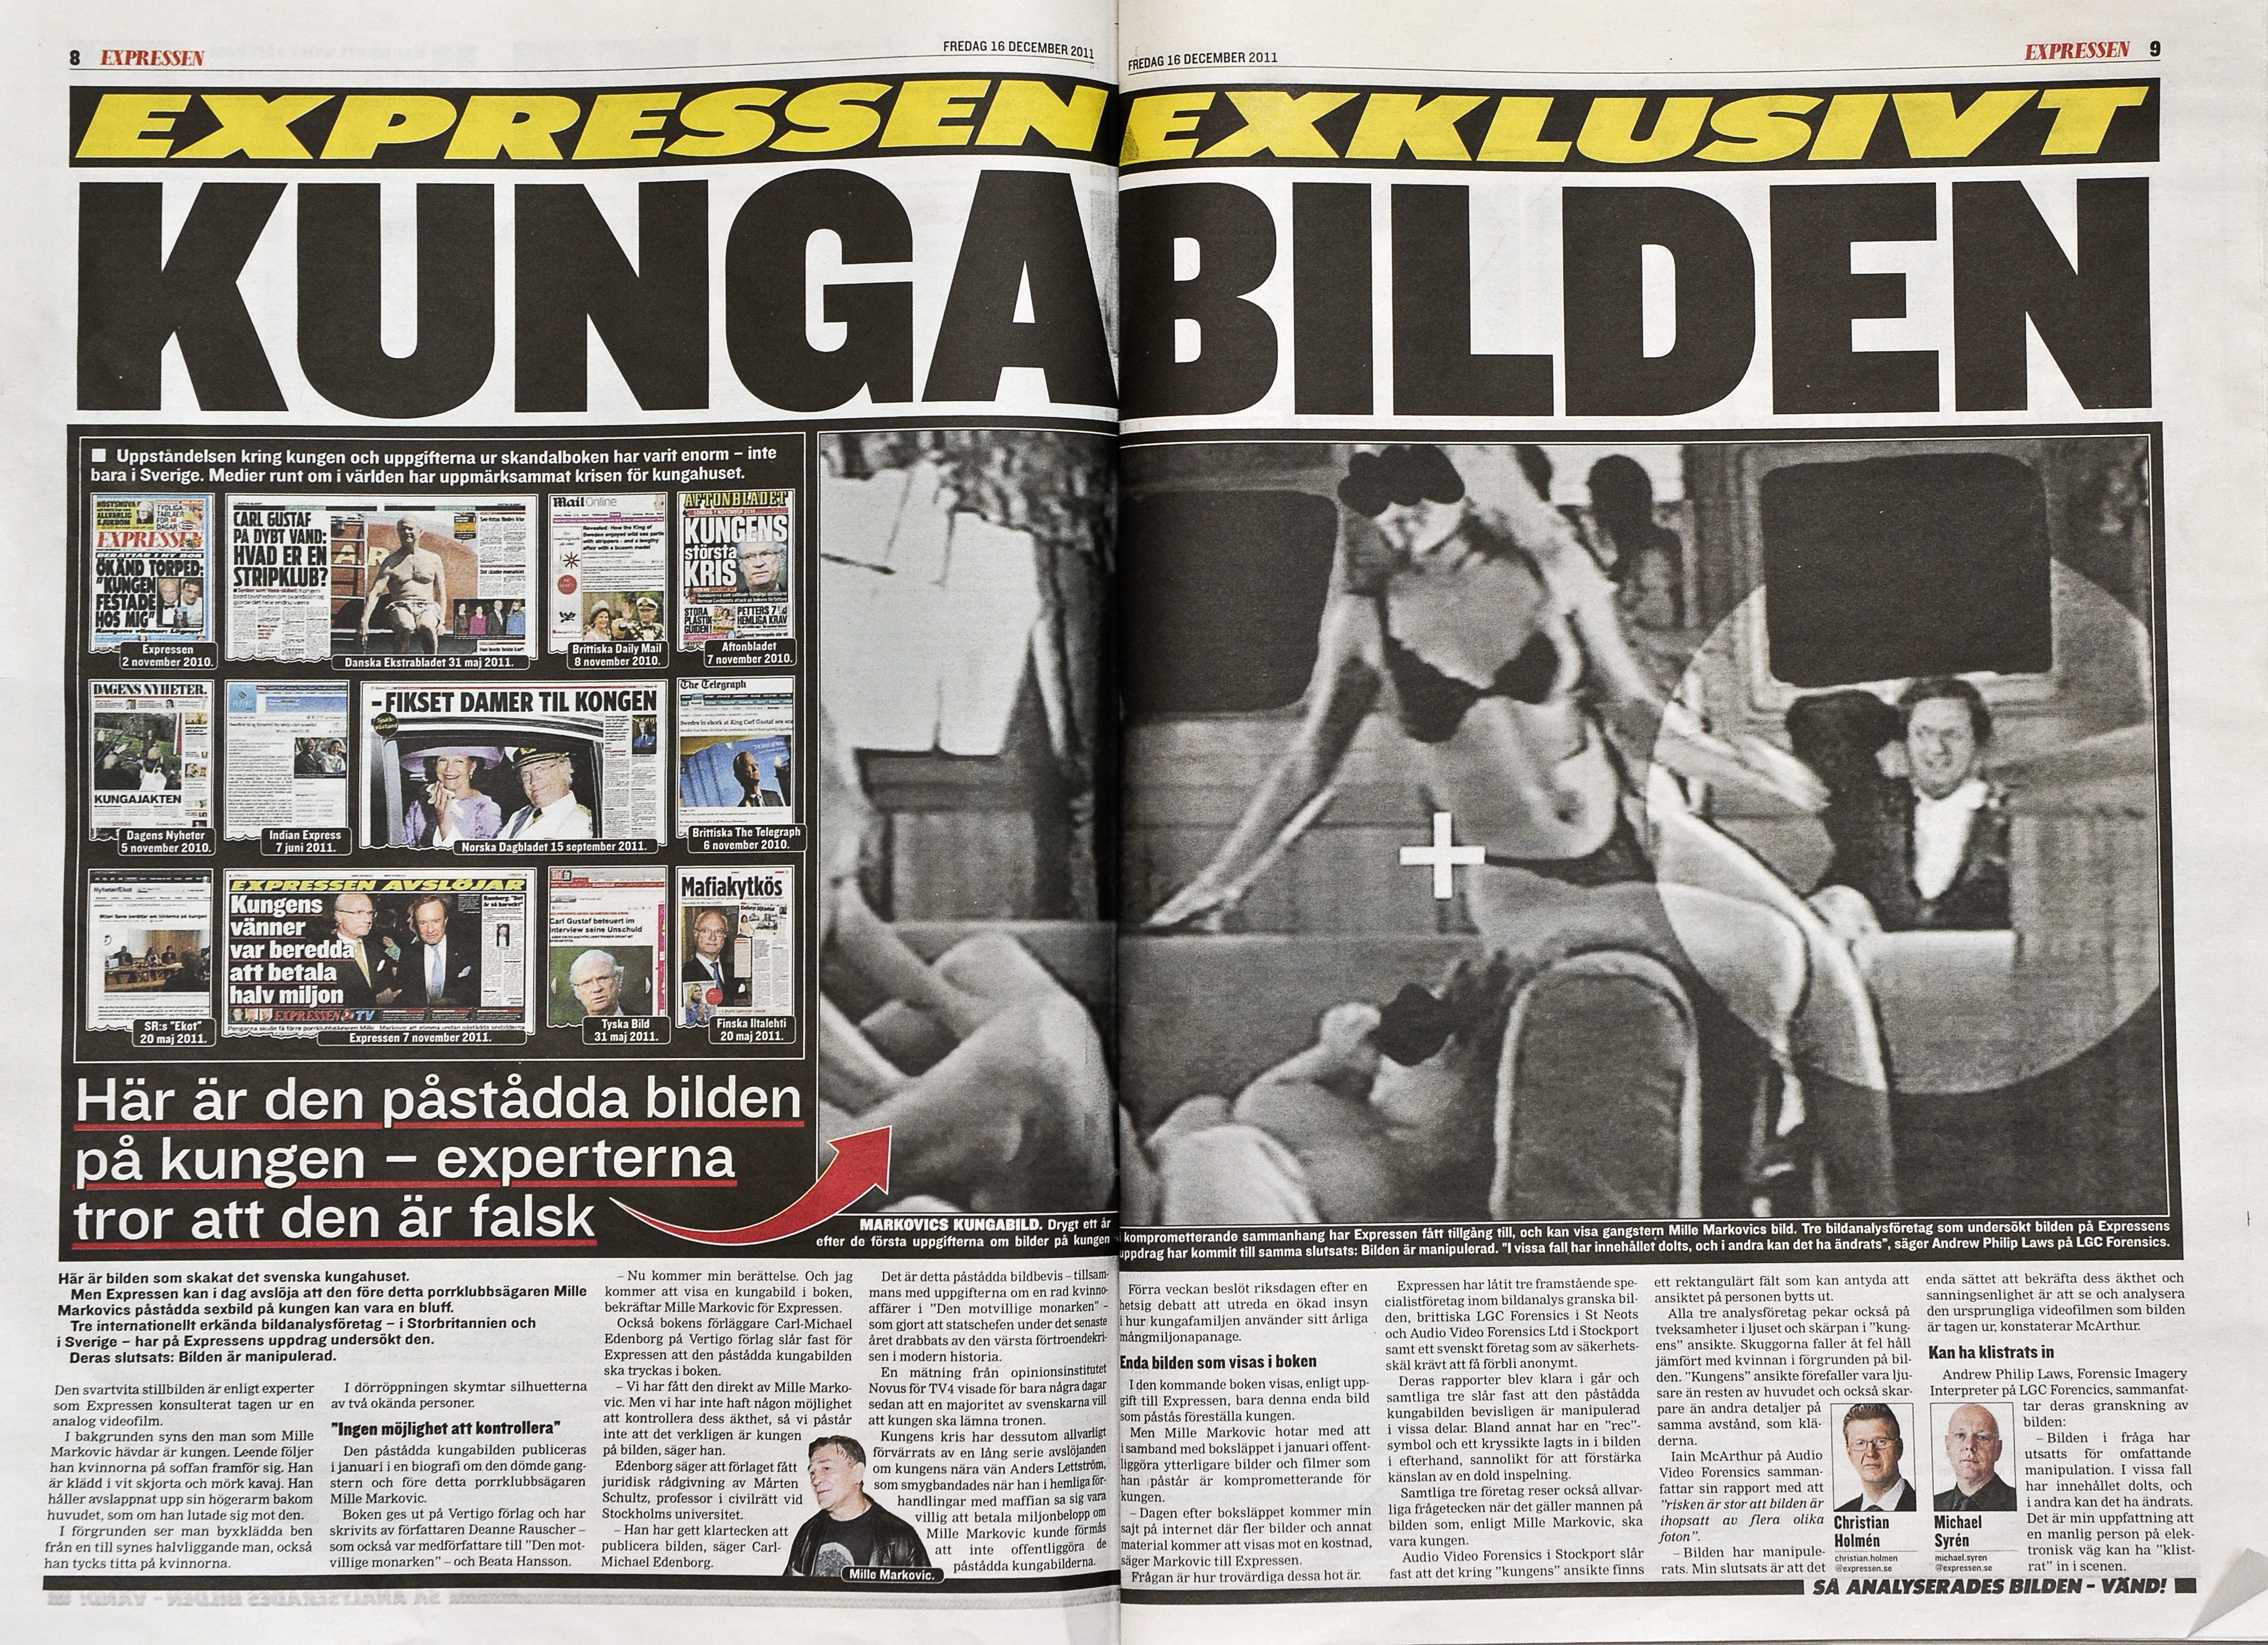 Kvällstidningen Expressen publicerade 16 december 2011 de omtalde bilderna som ska visa kung Carl Gustaf besöka en strippklubb. Enligt expert sägs bilderna vara manipulerade.